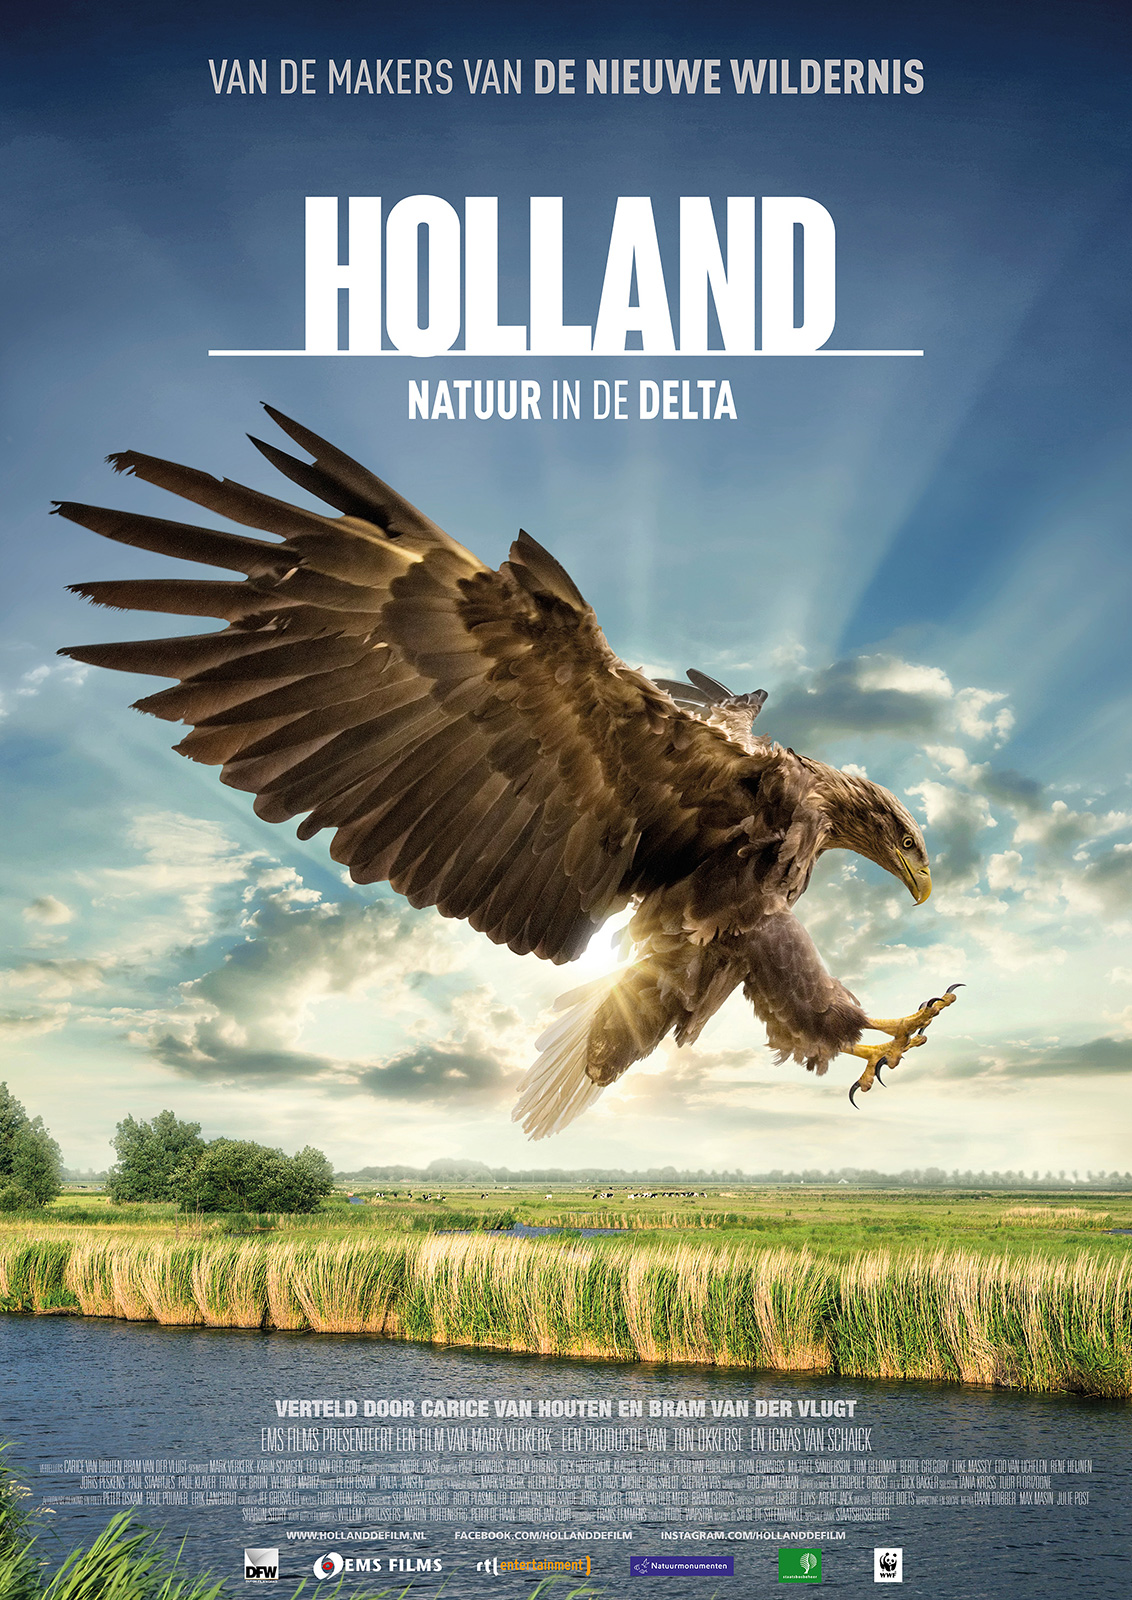 Holland: Natuur in de Delta (2015) ★★★★☆